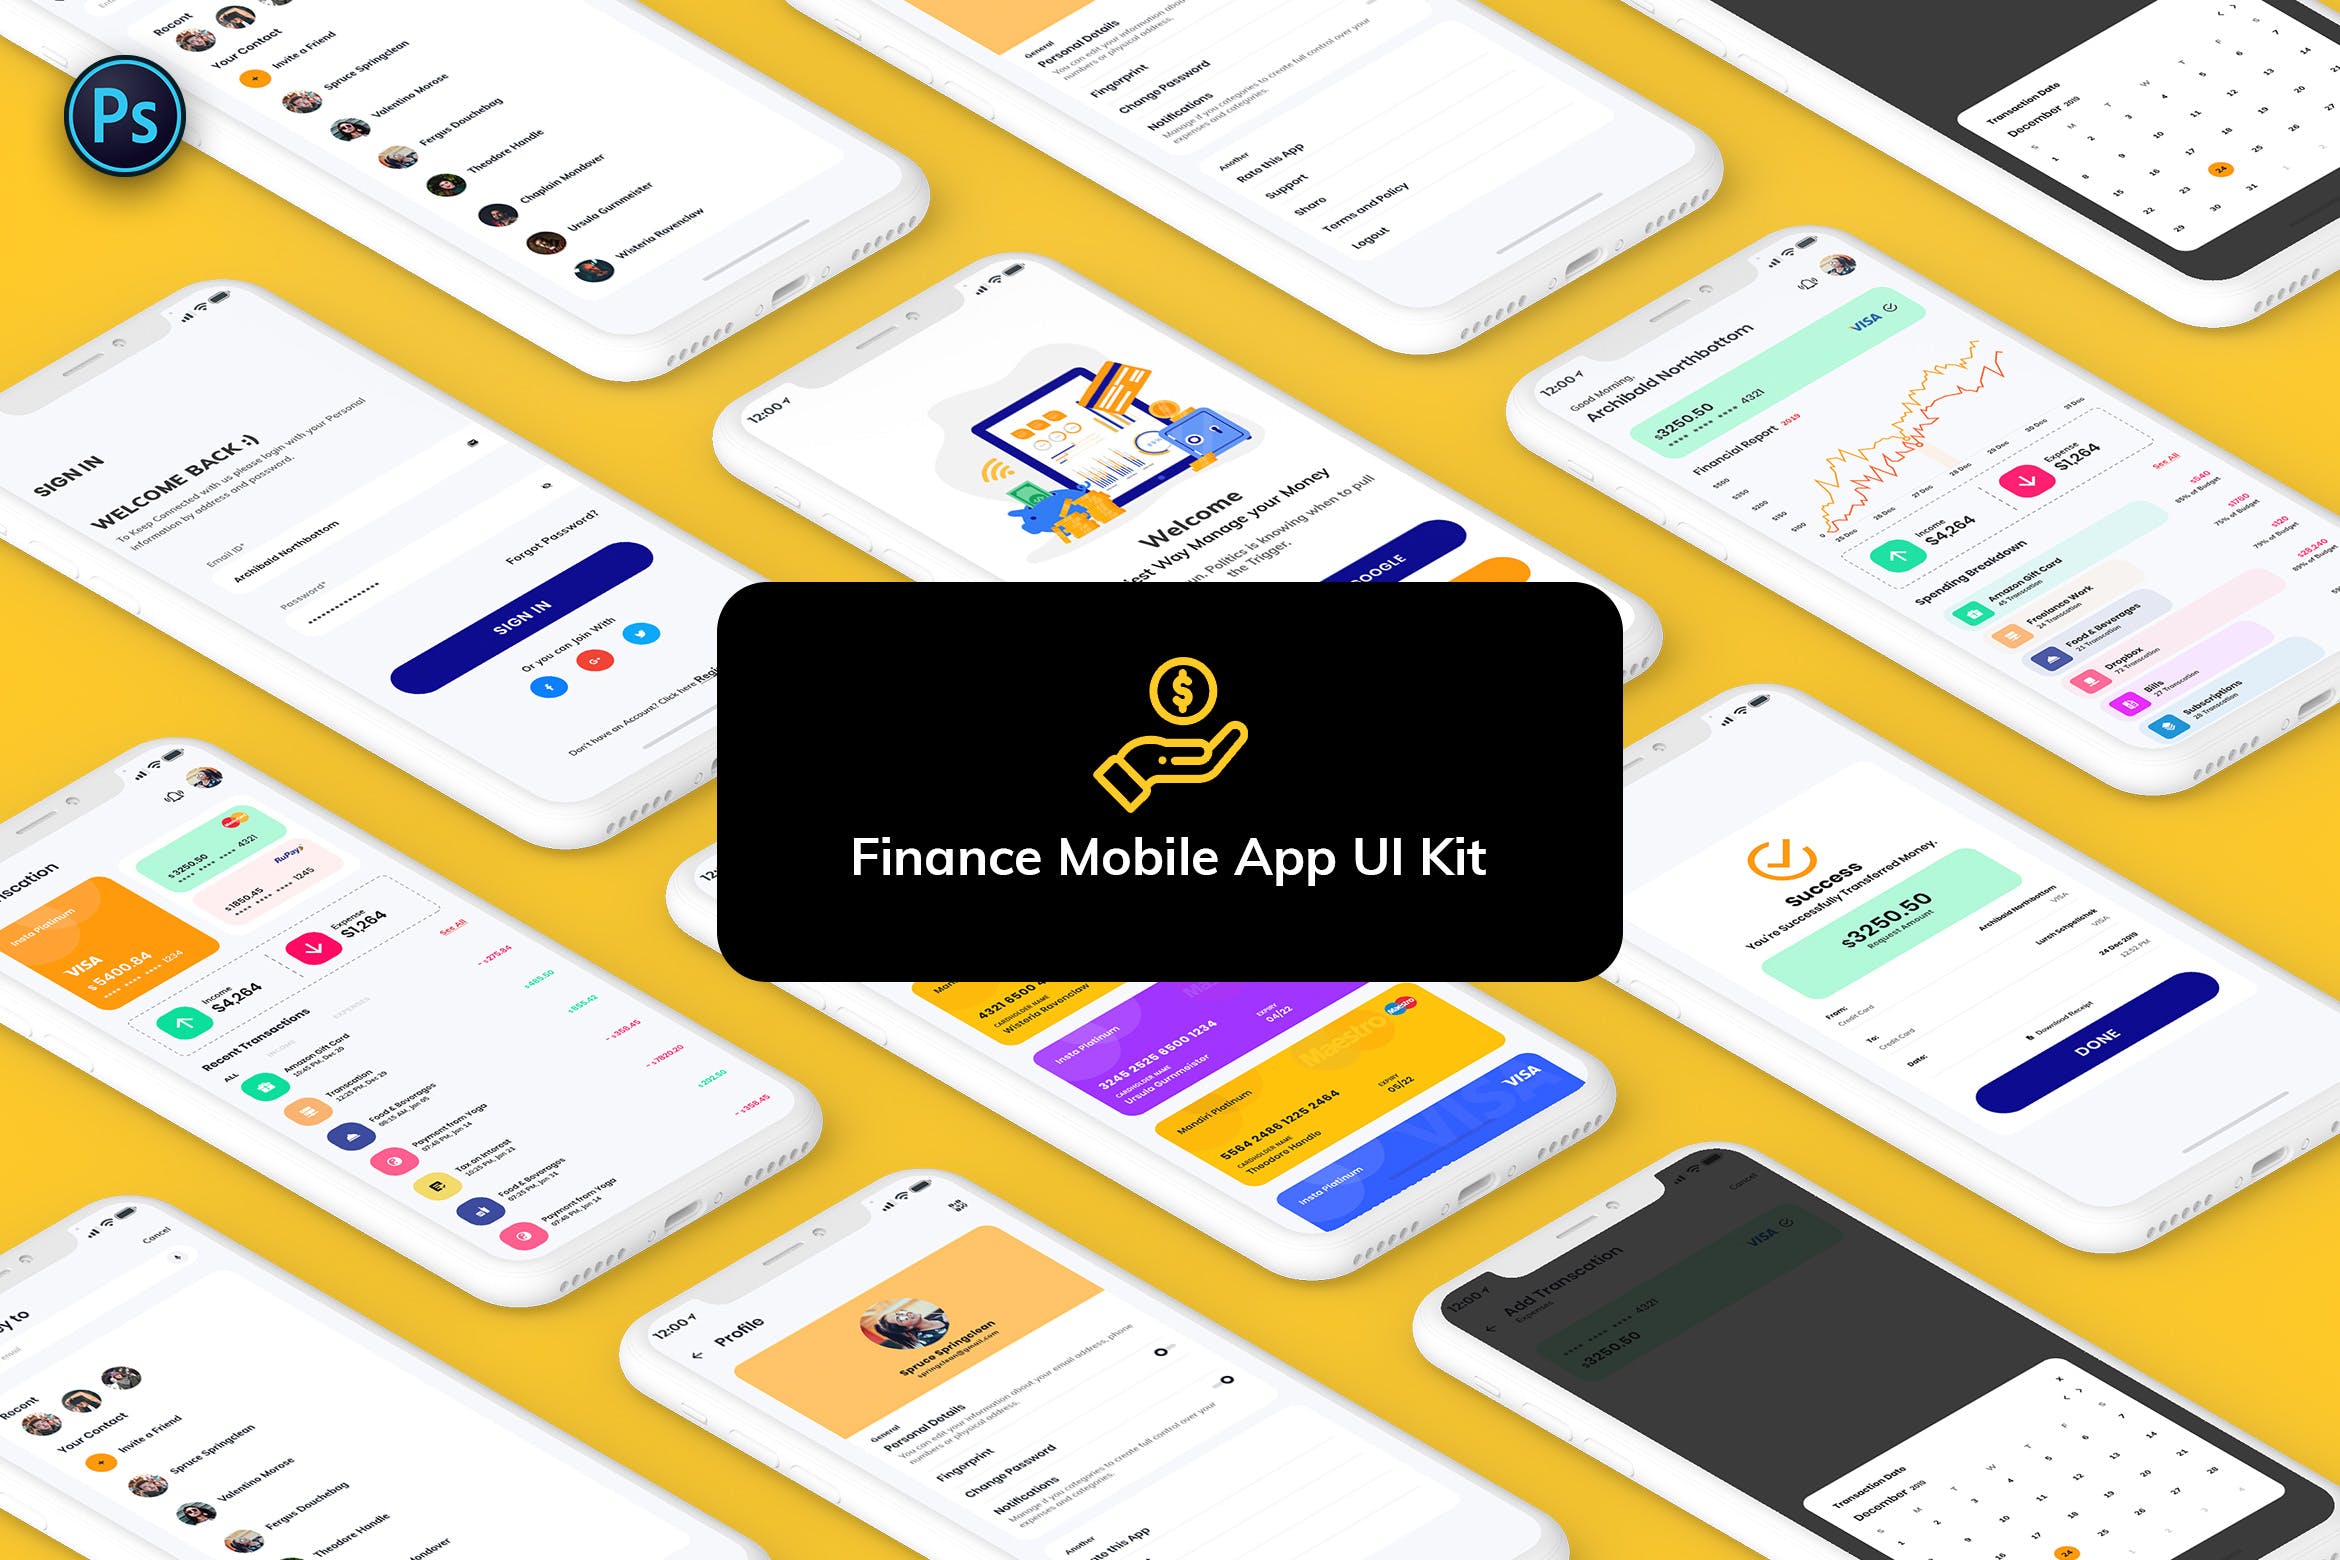 金融网上交易APP应用UI界面设计素材库精选模板 Finance Mobile App Template UI Kit Light Version插图